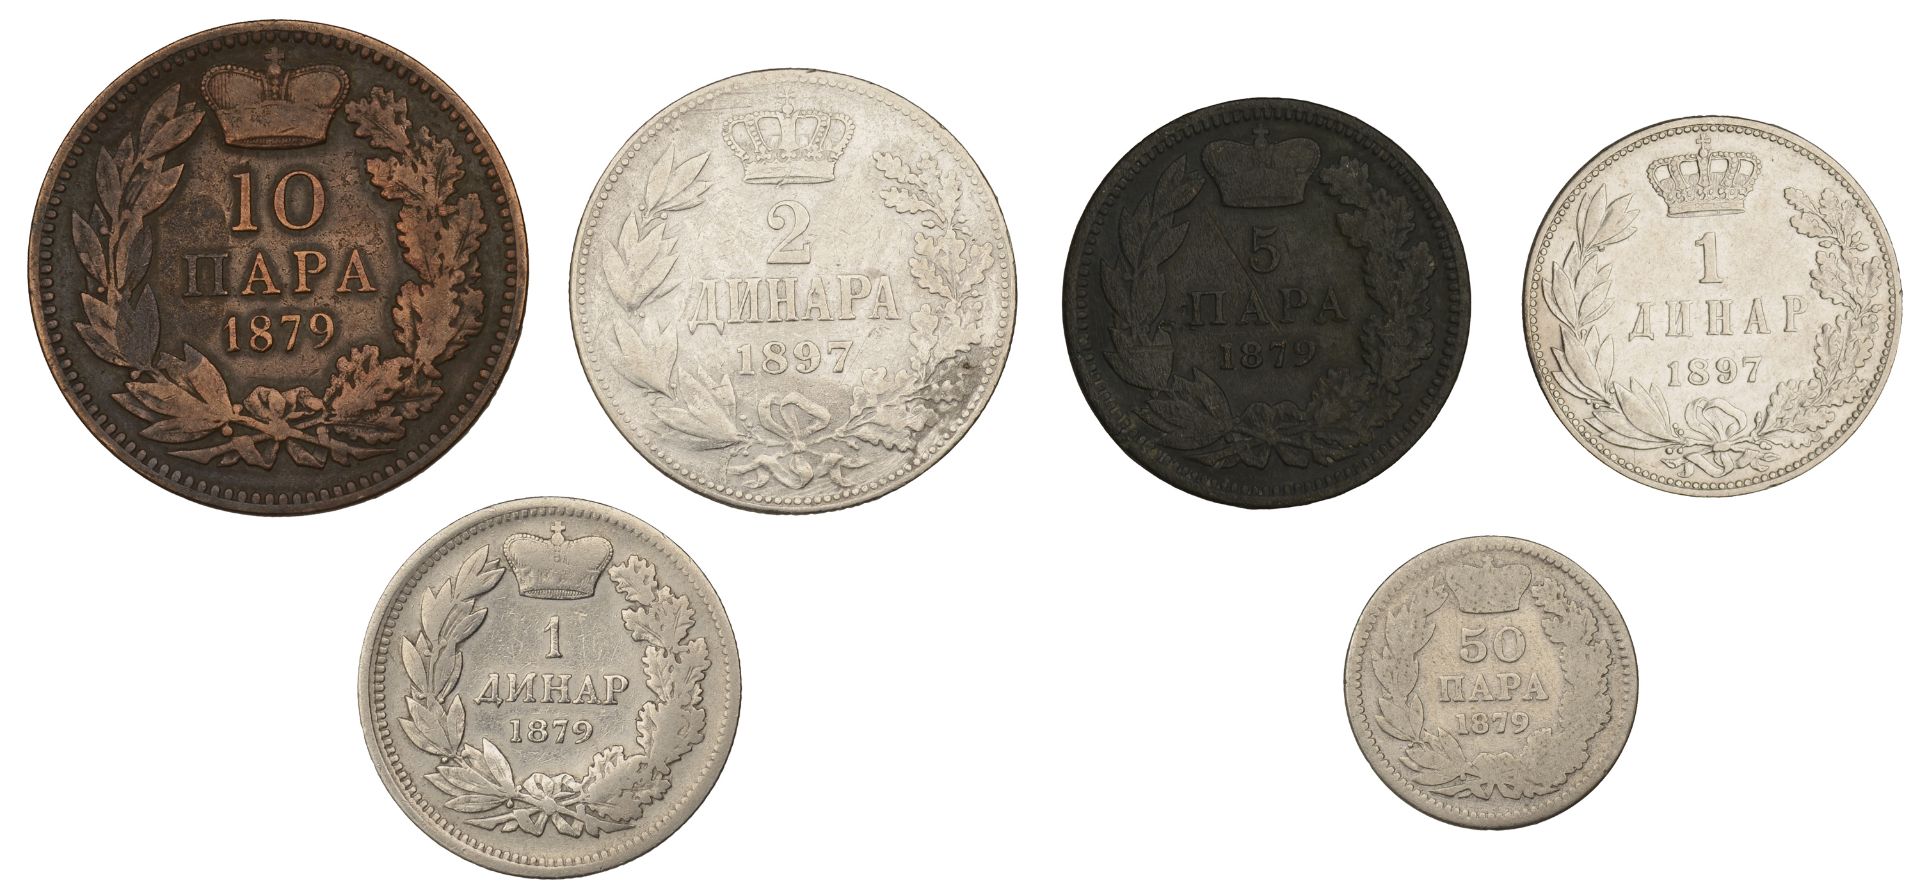 Serbia, Milan, Dinar, 50 Para, 10 Para and 5 Para, all 1879 (KM 7-10); Alexander I, 2 Dinara... - Image 2 of 2